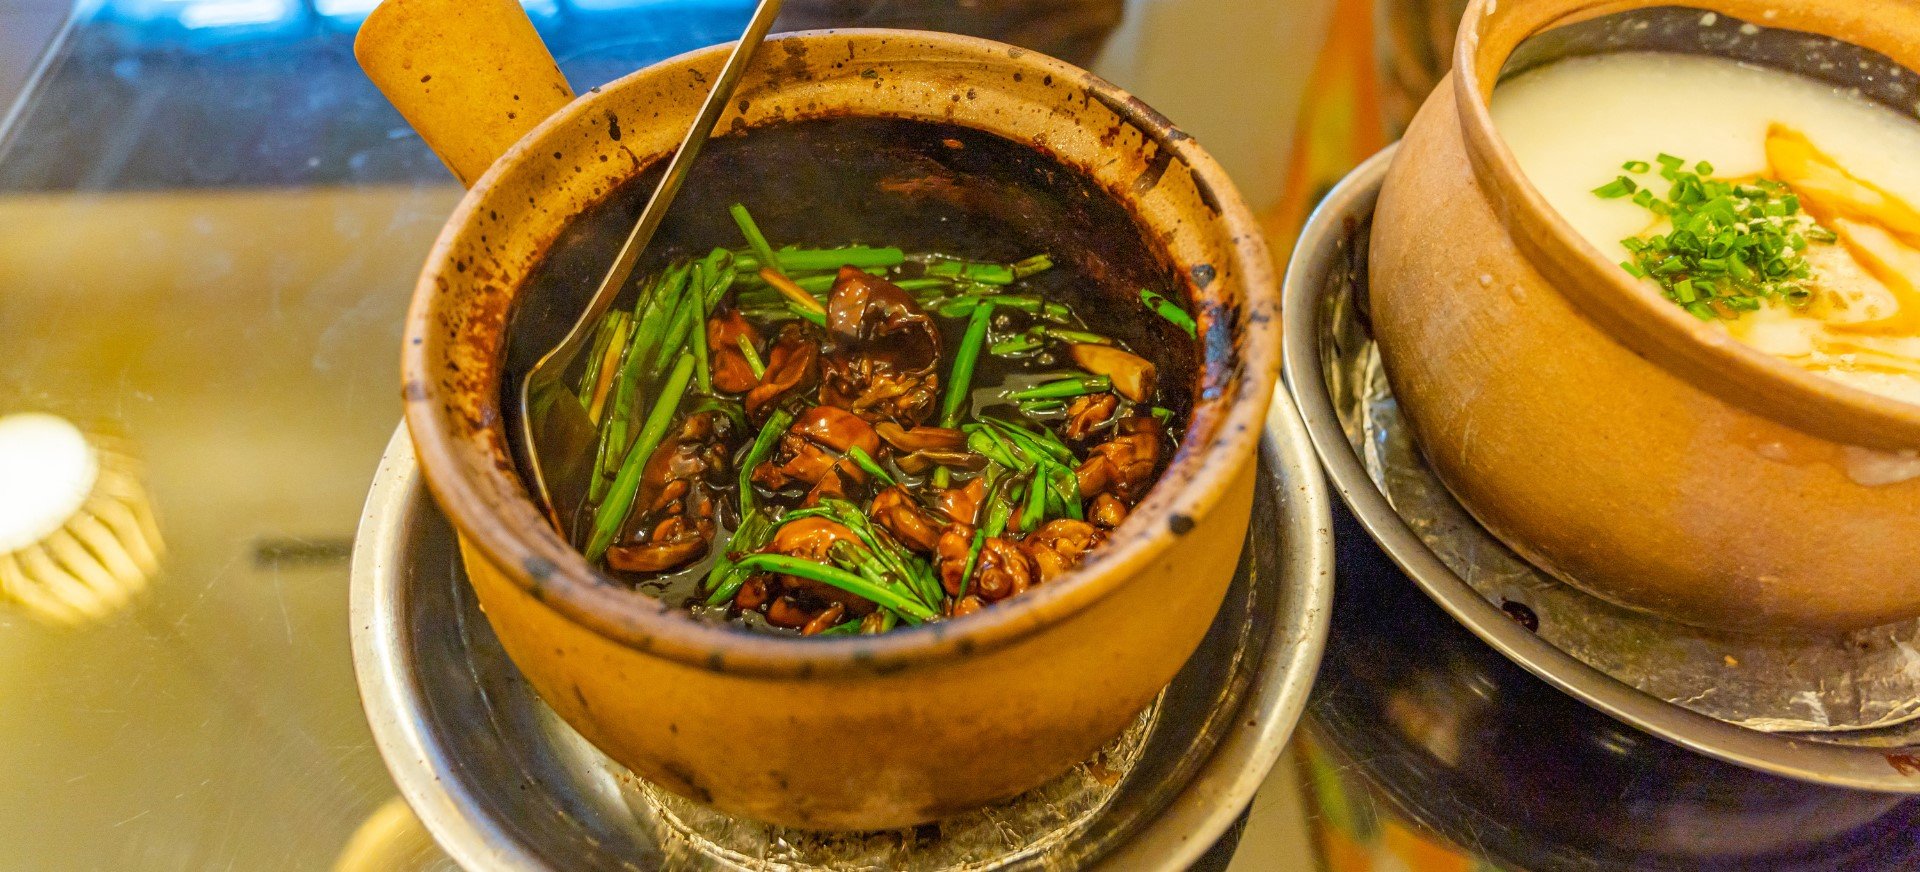 Biết được cách nấu cháo ếch Singapore ngon sẽ giúp bạn và gia đình có thêm một món ăn hấp dẫn vào mỗi cuối tuần